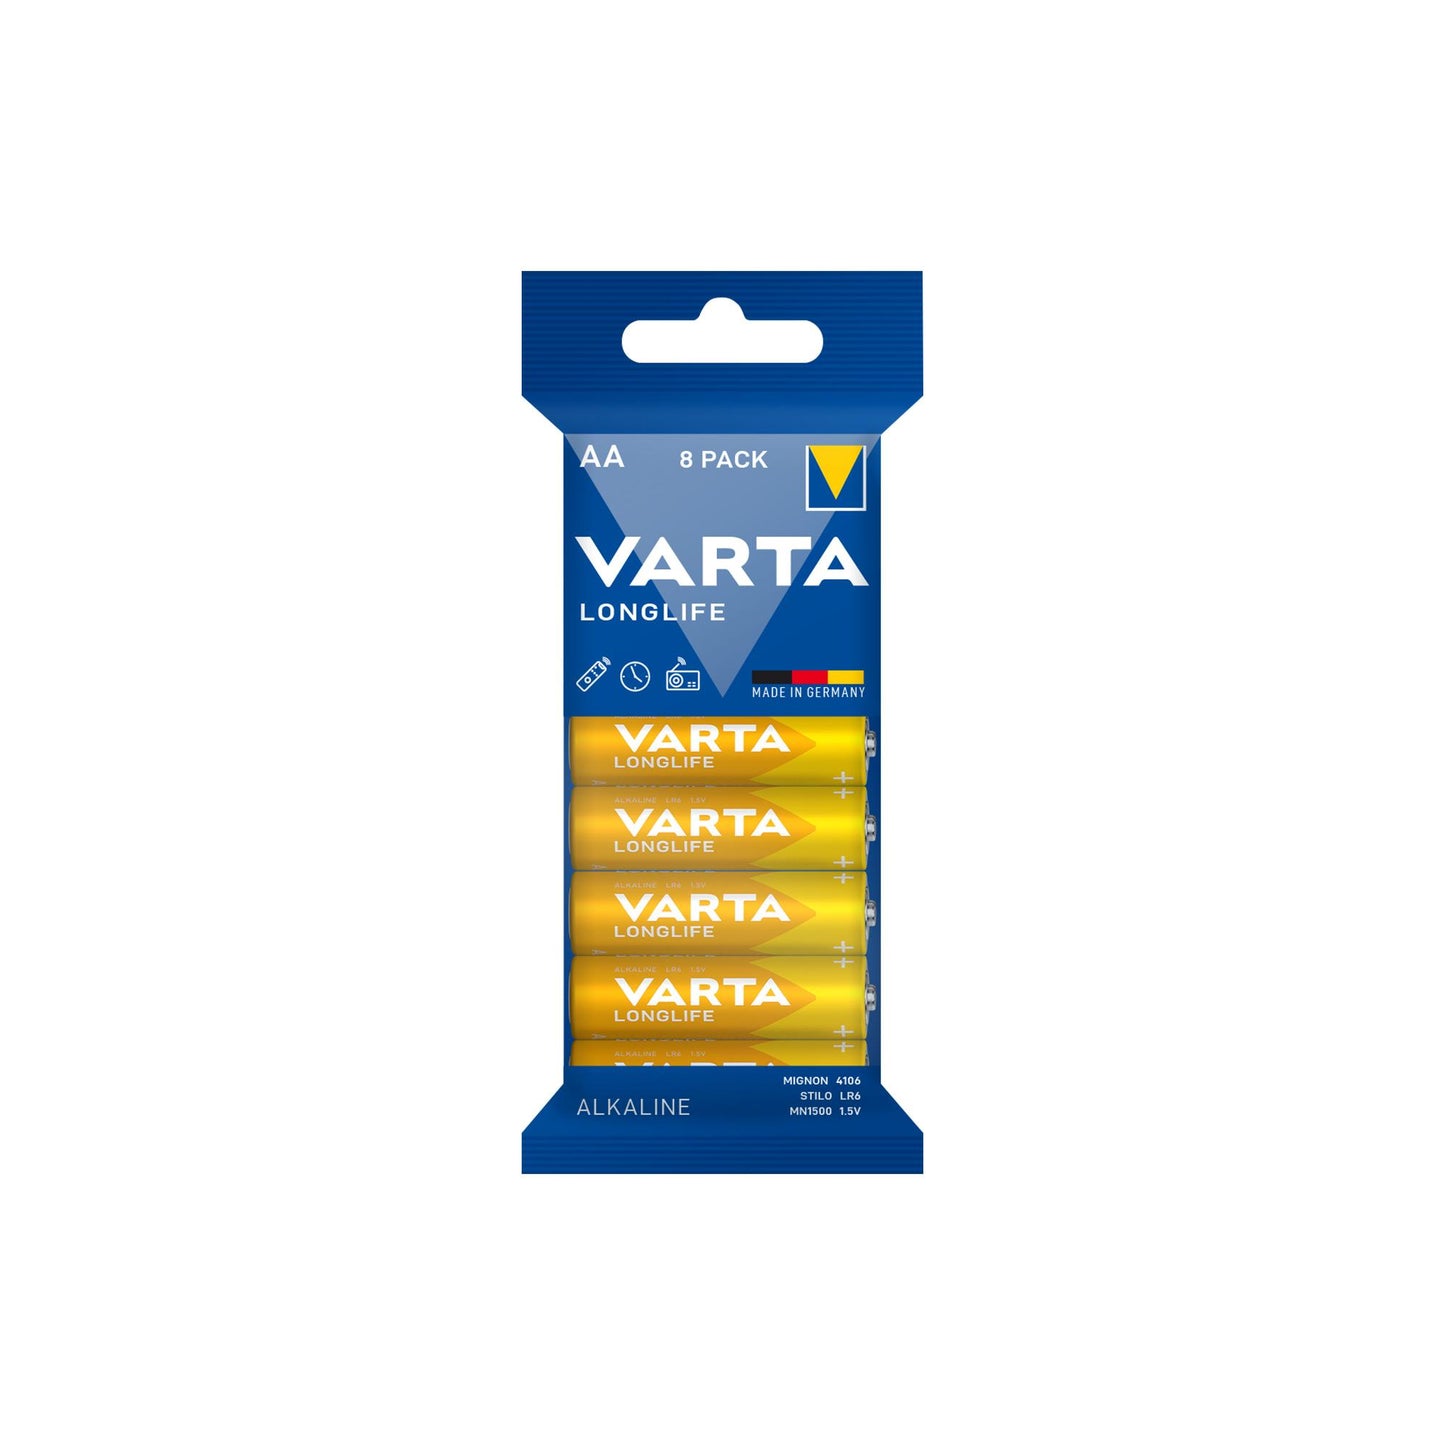 VARTA Batterie Alkaline Mignon AA LR06, 1.5V Longlife, Folienverpackung (8-Pack)